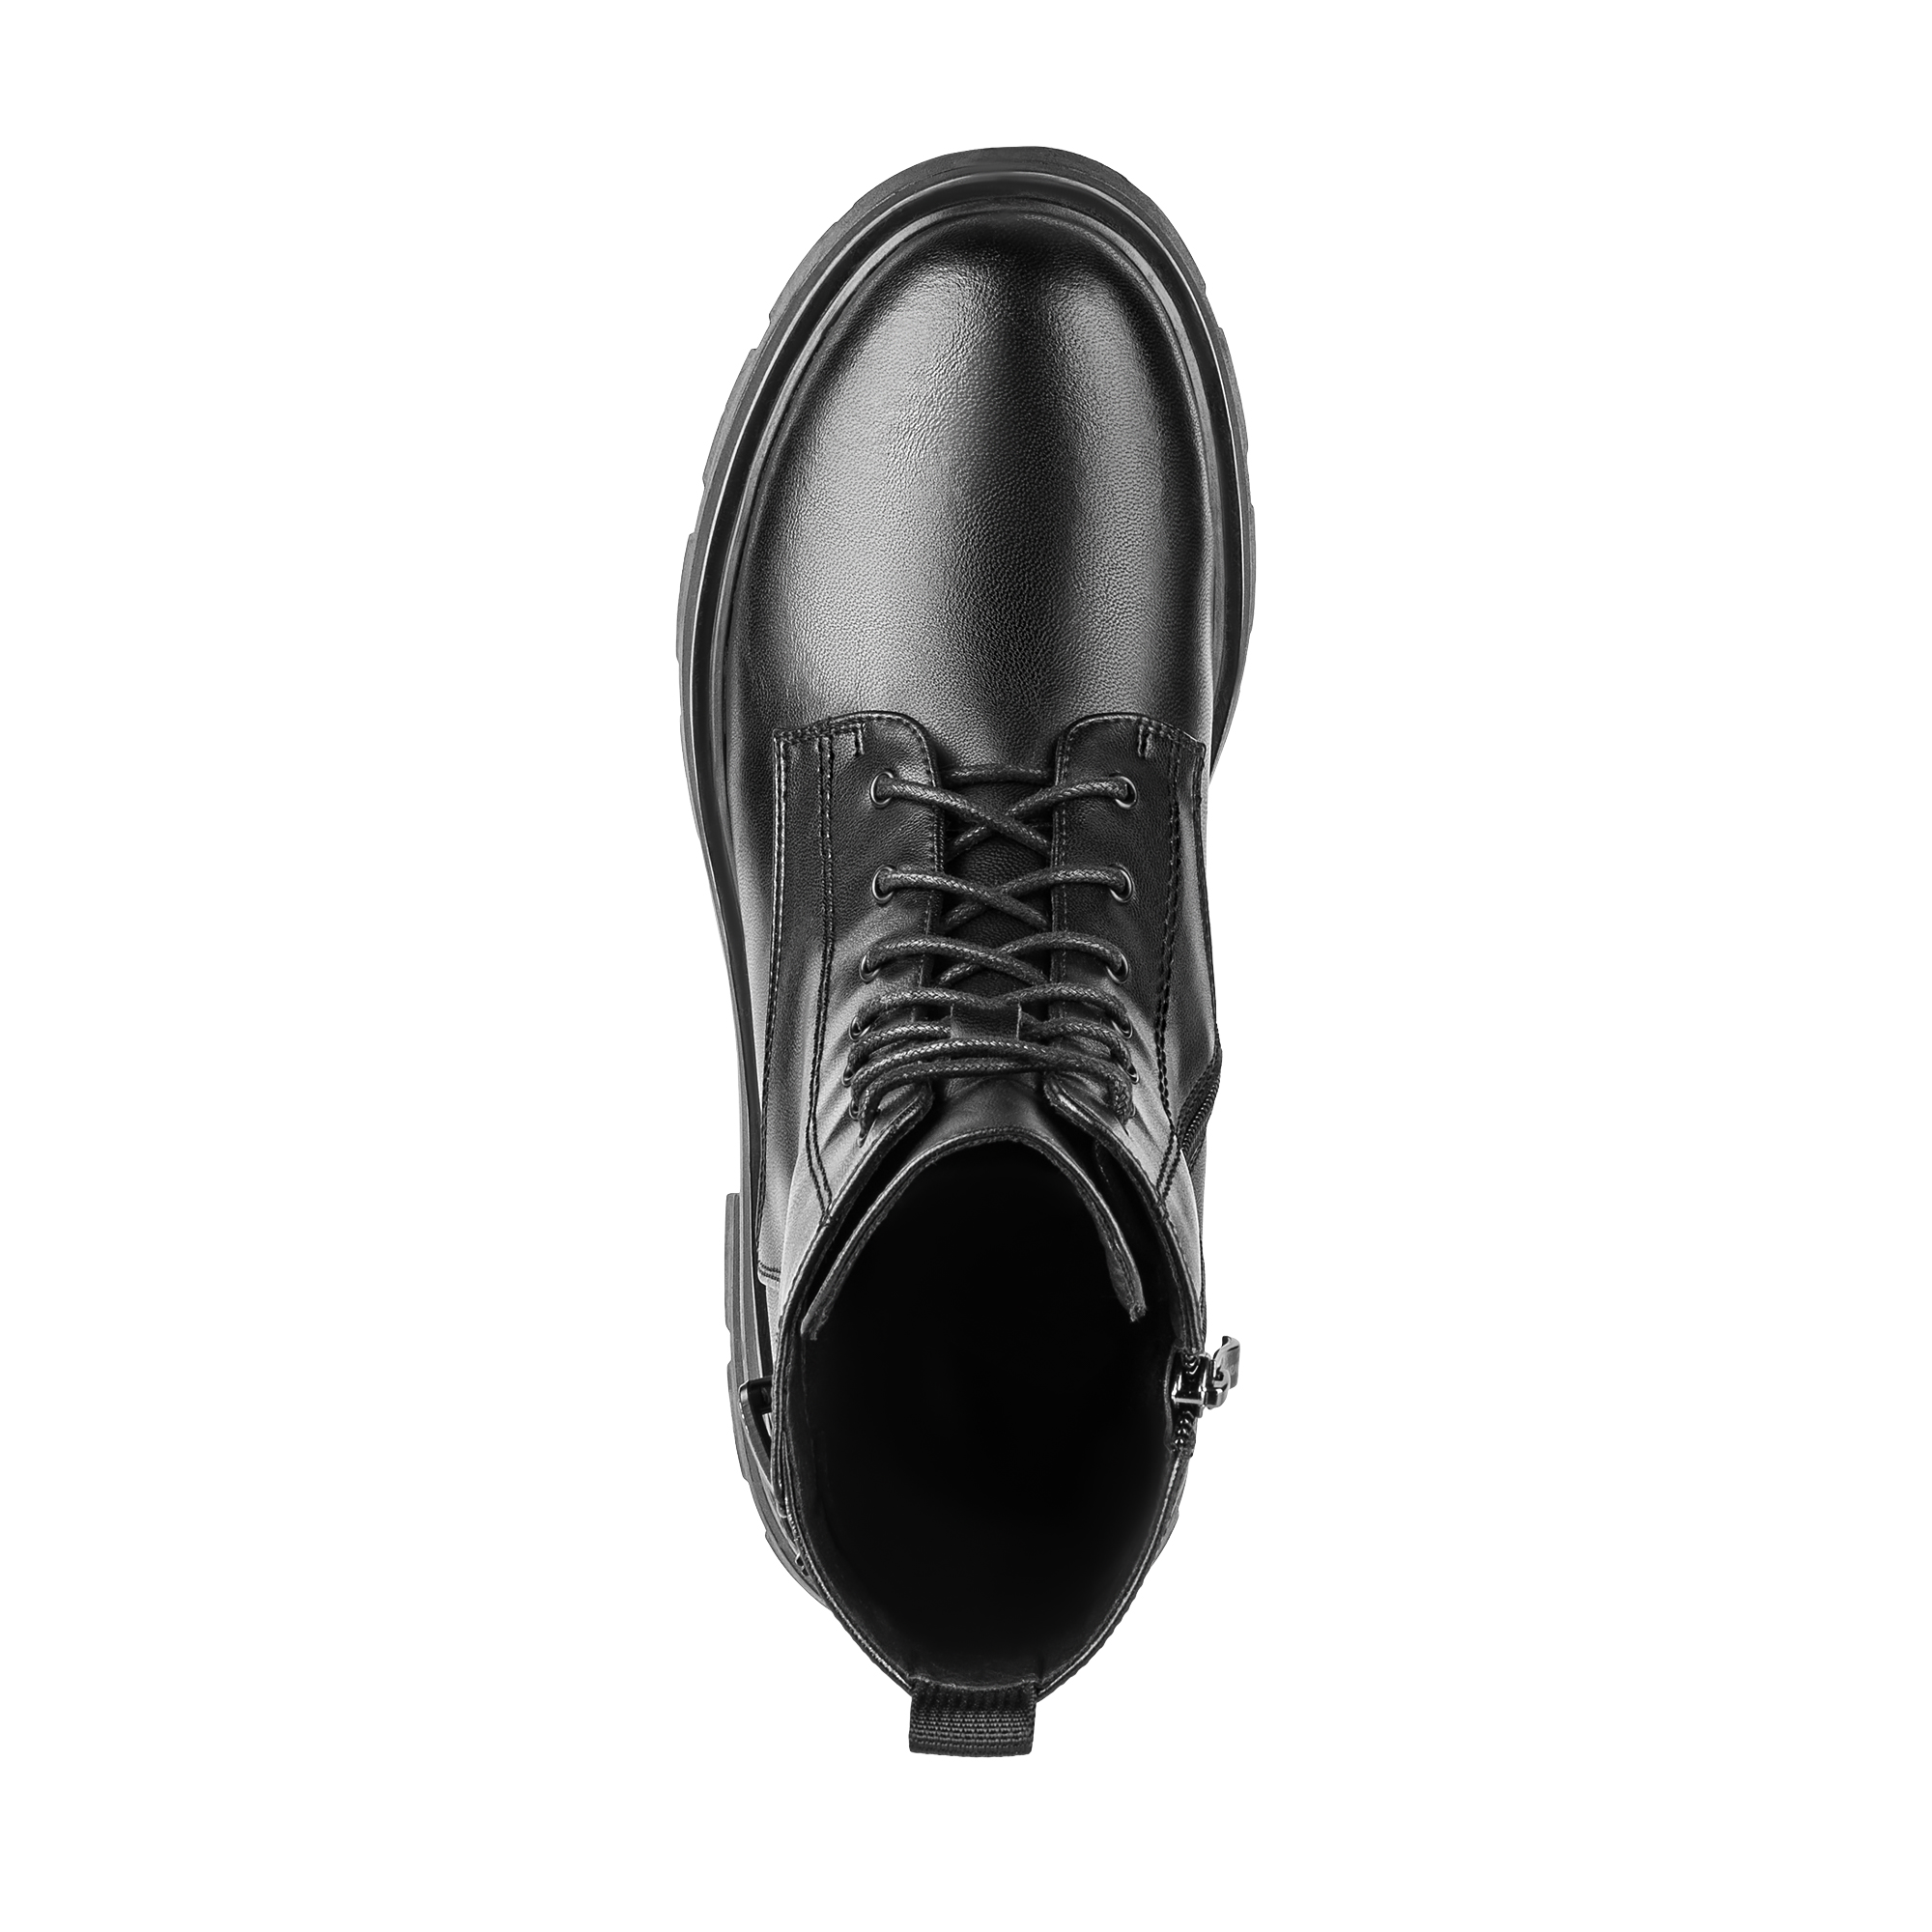 Ботинки Thomas Munz 102-196A-5602, цвет черный, размер 36 - фото 5